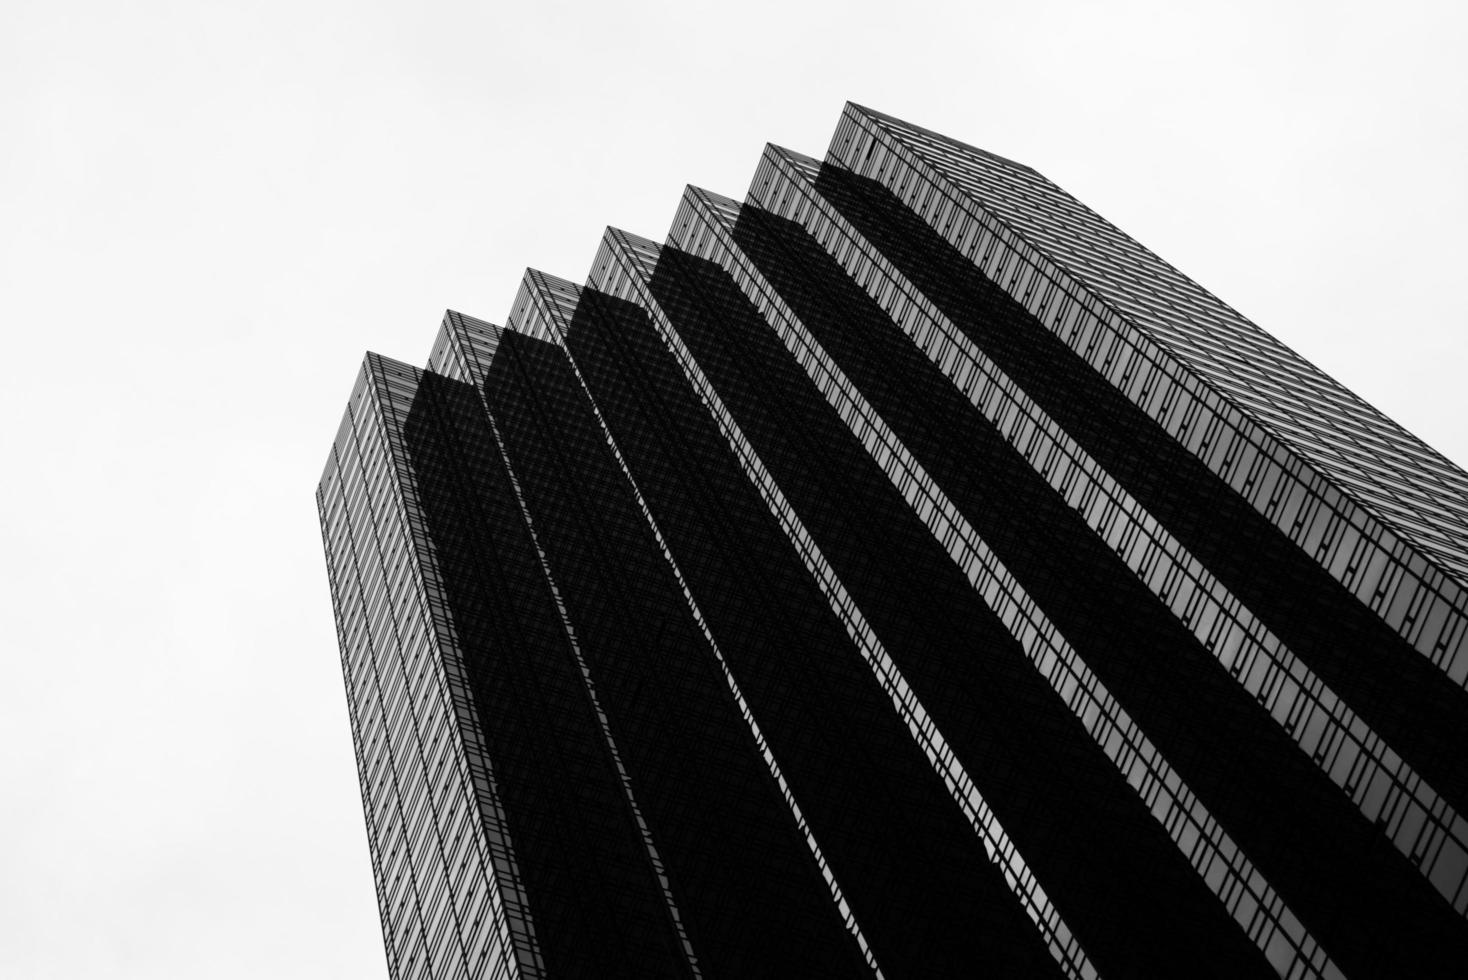 foto in bianco e nero del grattacielo